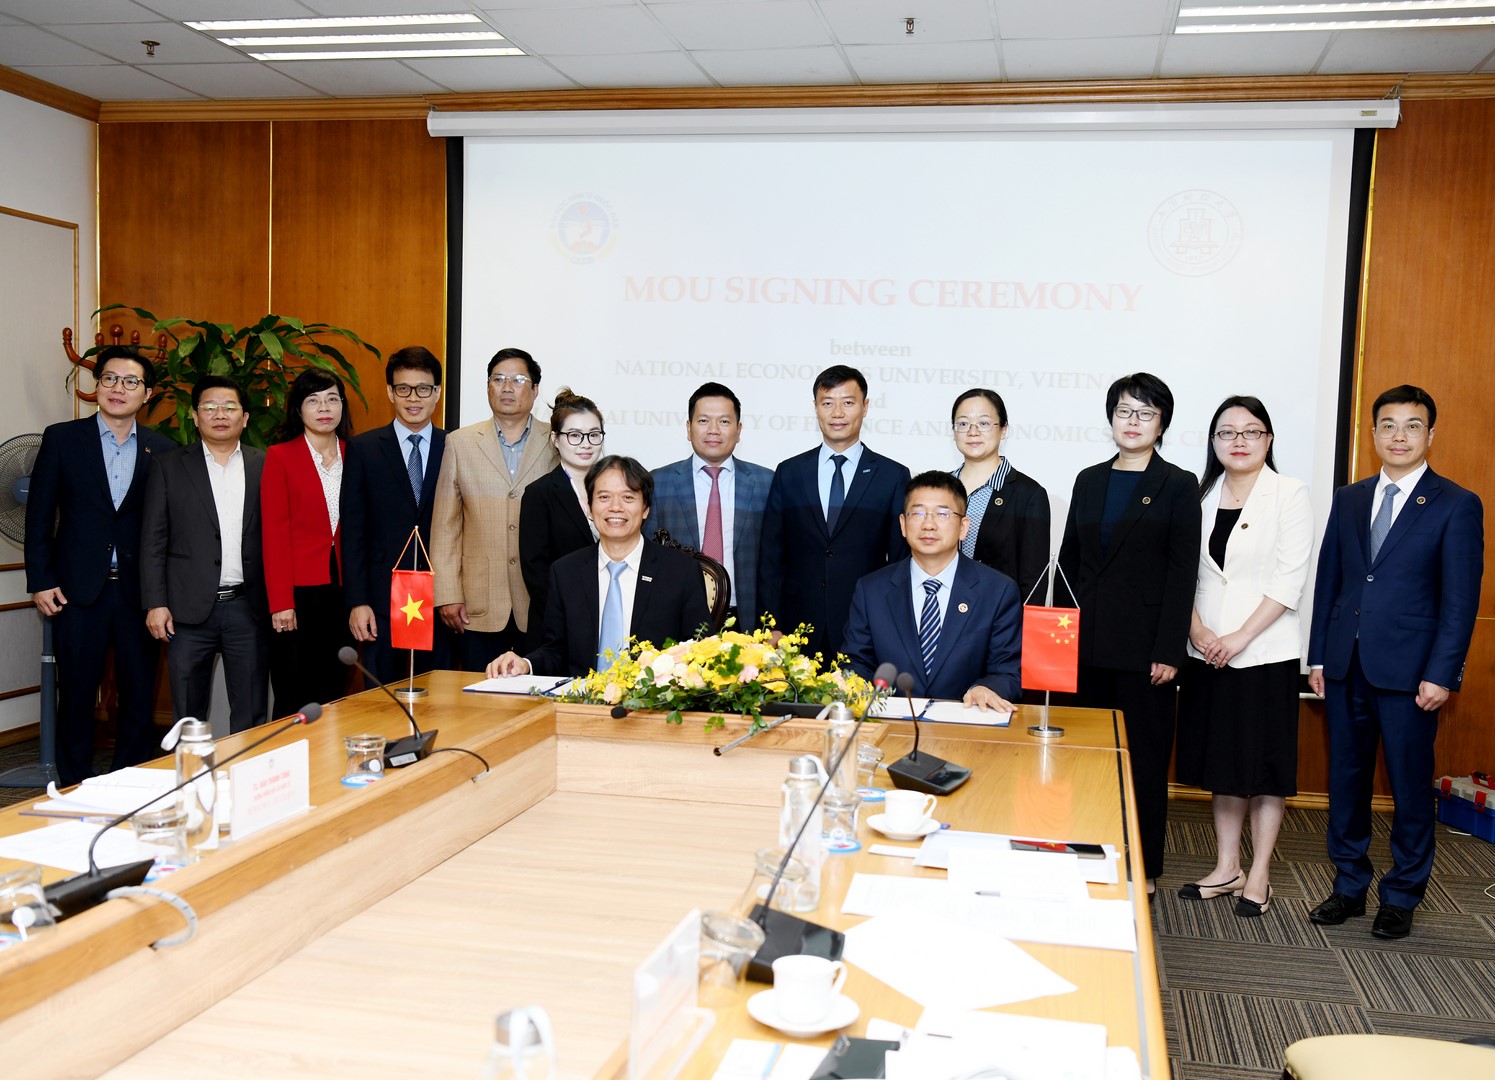 Lễ ký kết Biên bản thỏa thuận hợp tác và trao đổi sinh viên giữa Trường Đại học Kinh tế Quốc dân và Trường Đại học Kinh tế Tài chính Thượng Hải, Trung